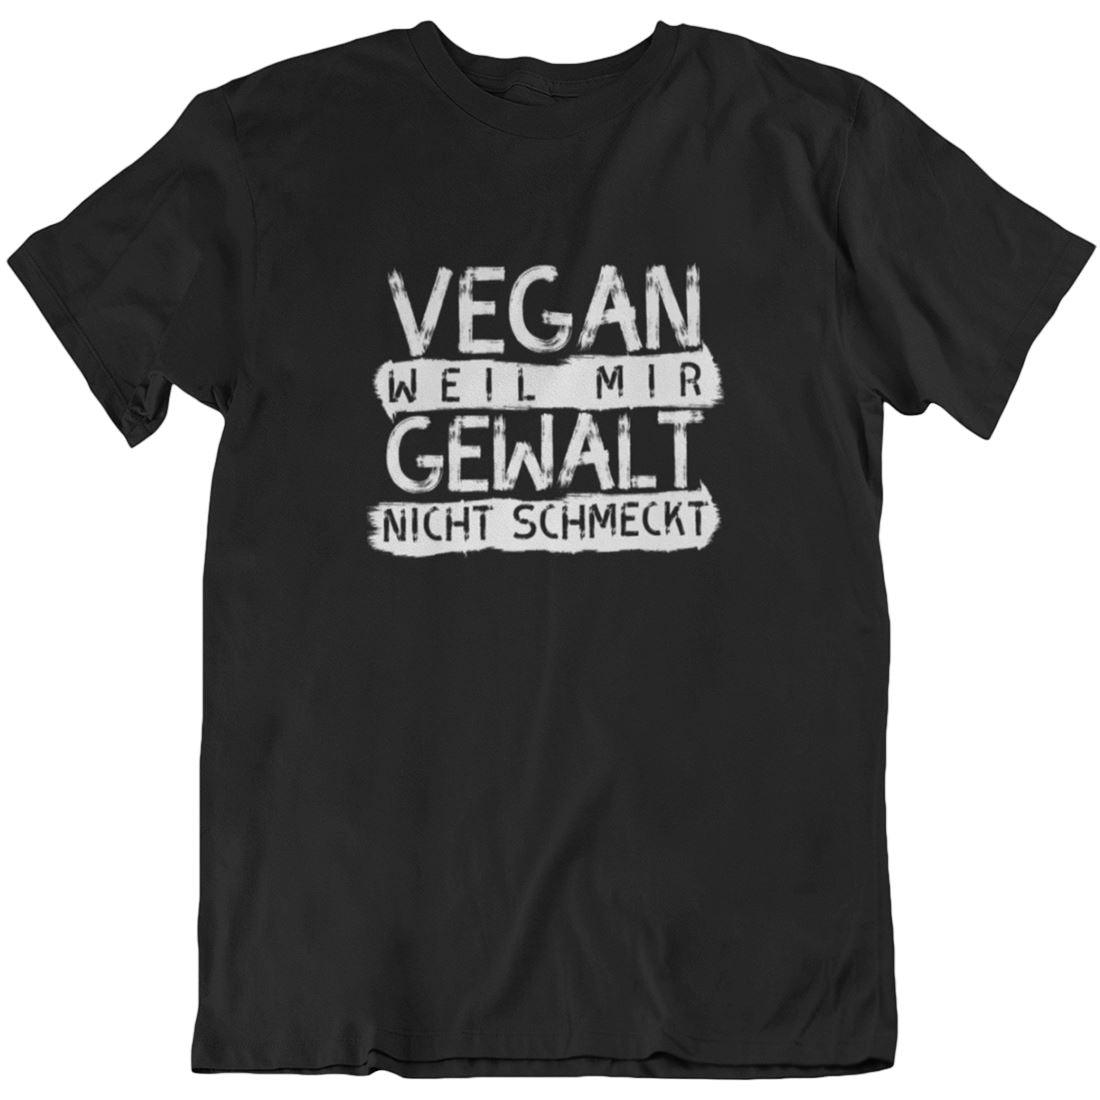 Vegan weil mir Gewalt nicht schmeckt - Unisex Organic Shirt - Team Vegan © vegan t shirt